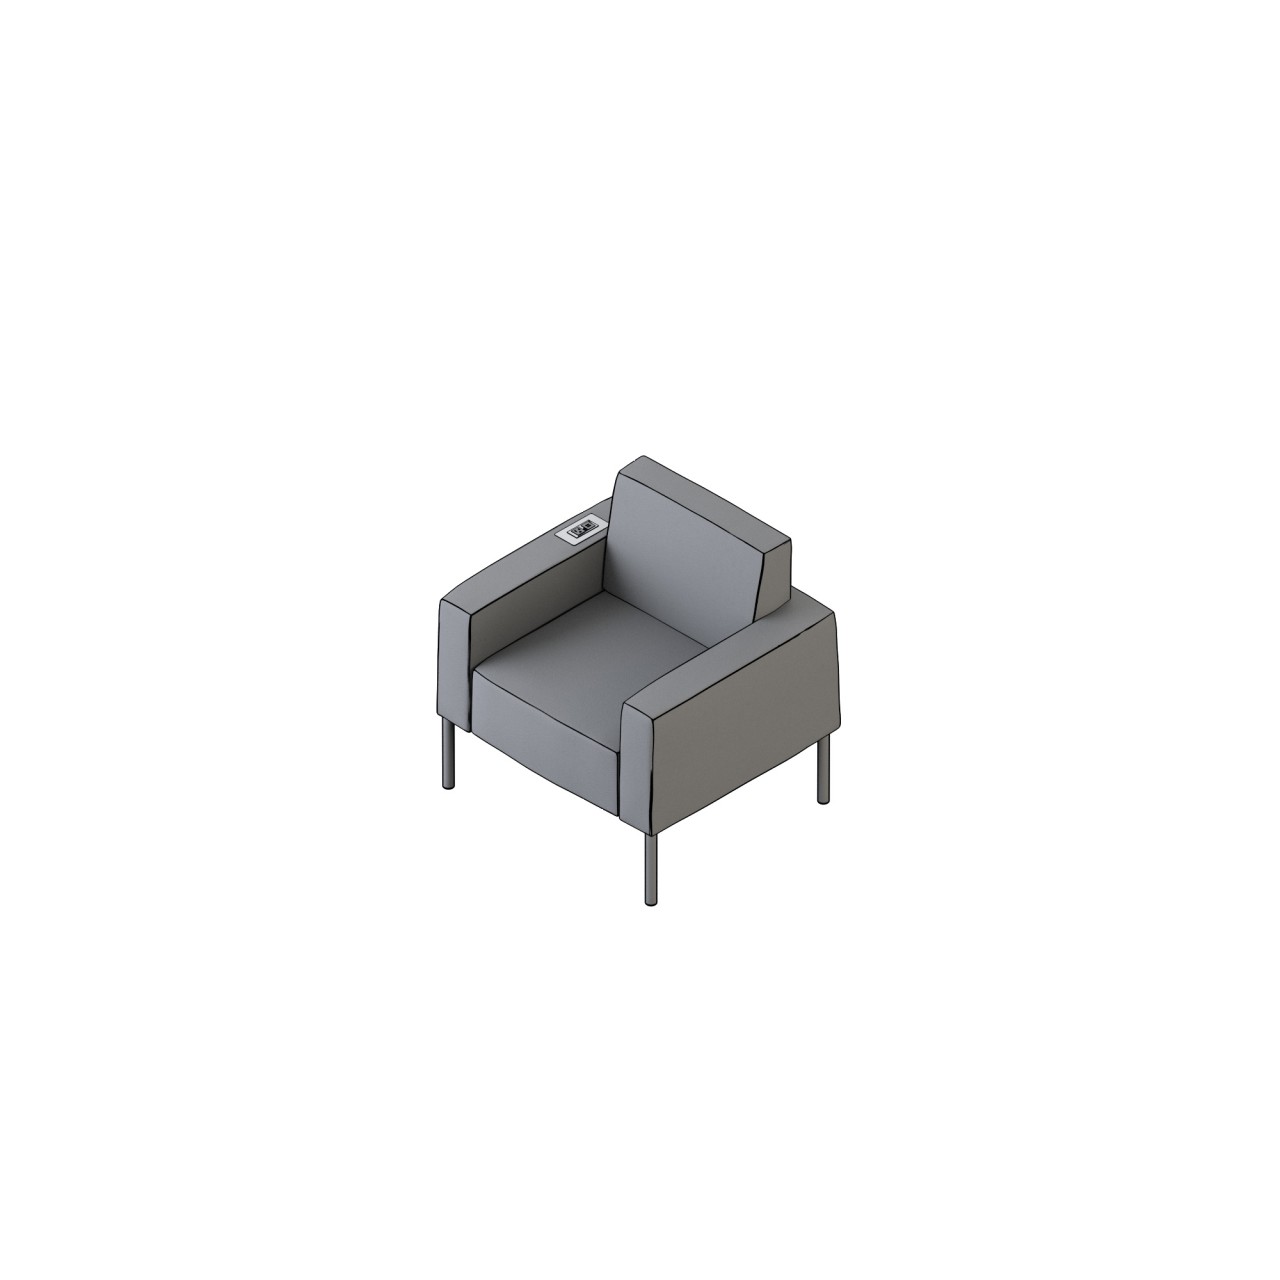 mozzo lounge/modular - 62010 
COM 4.5 COL 90